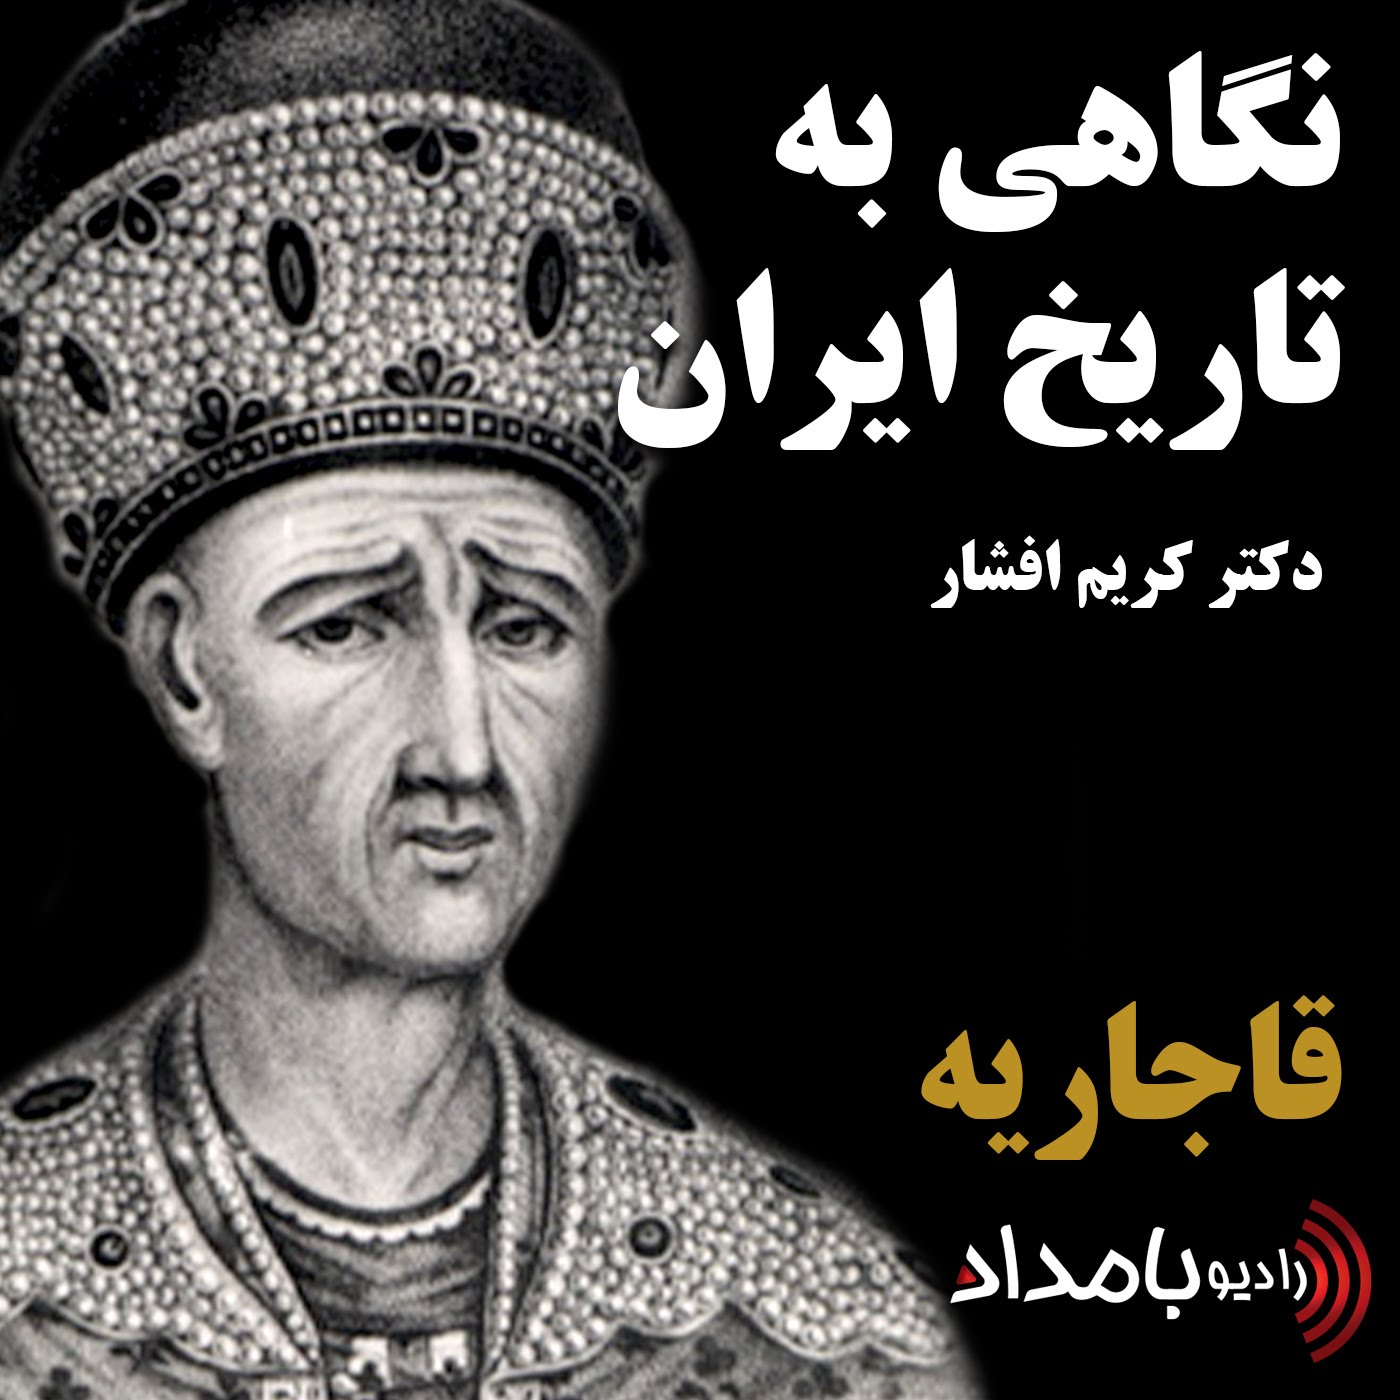 قاجاریه، بخش اول، کلیاتی در باره ۱۴۴ سال سلطنت قاجاریه